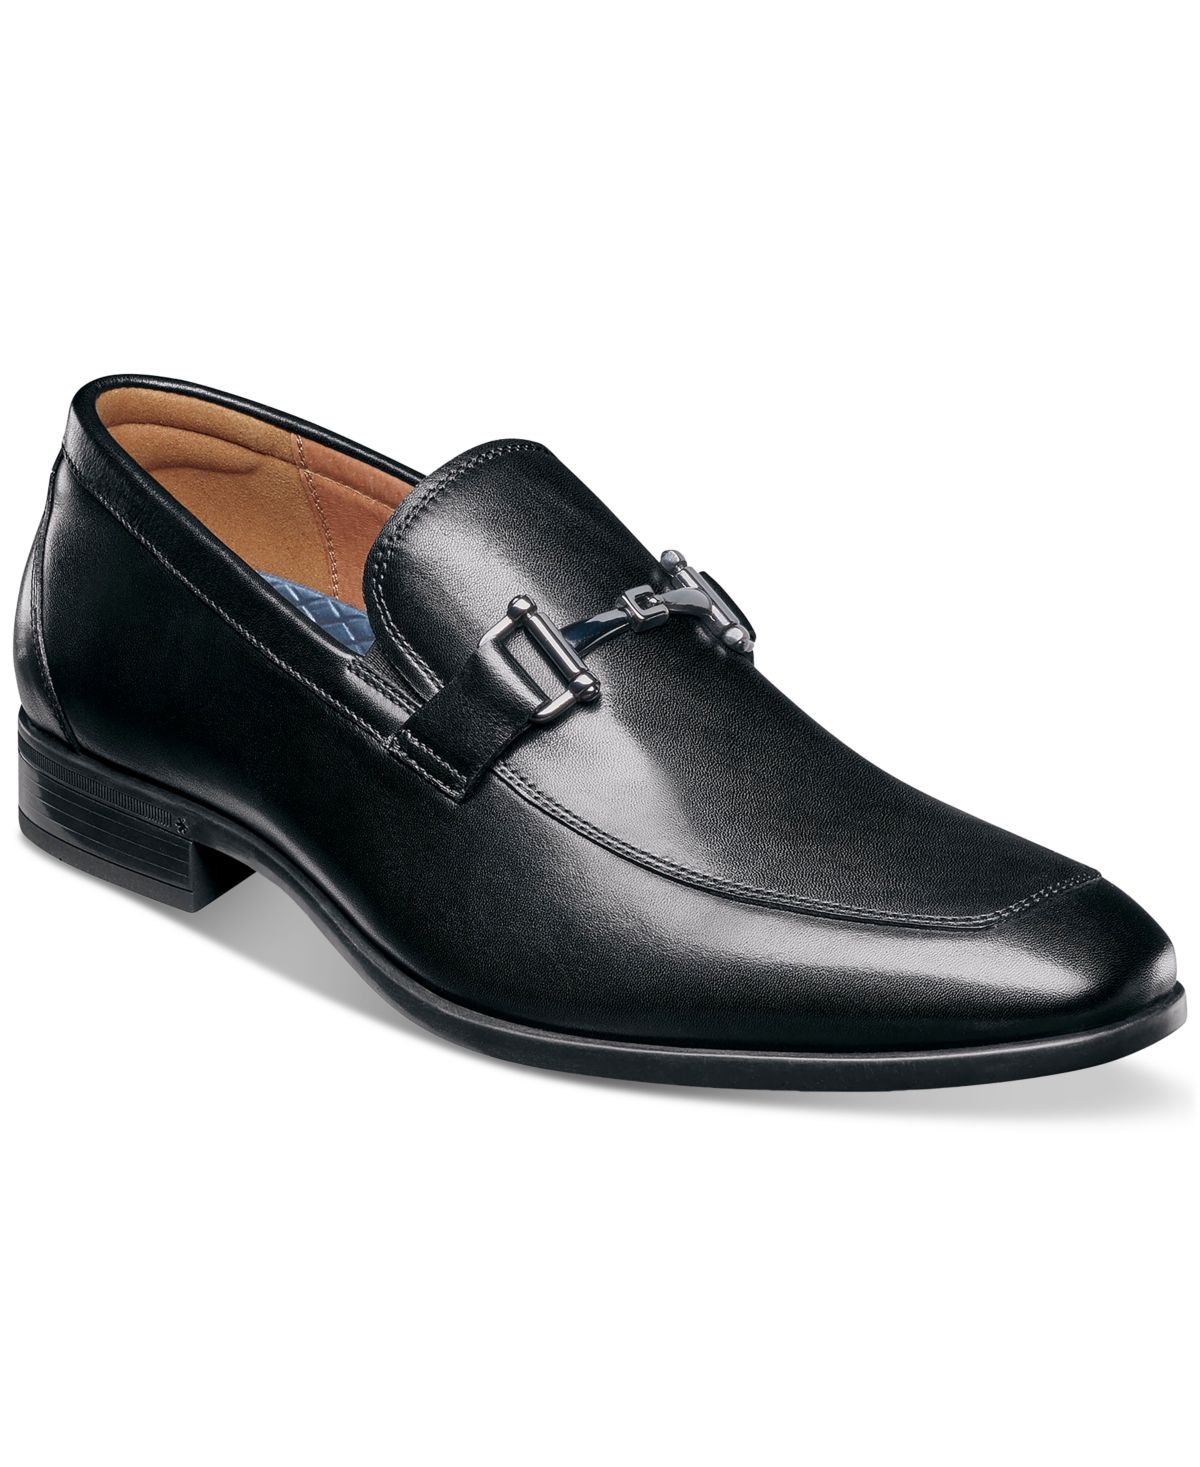 Men's Pregamo Slip-On Bit Loafers - Black